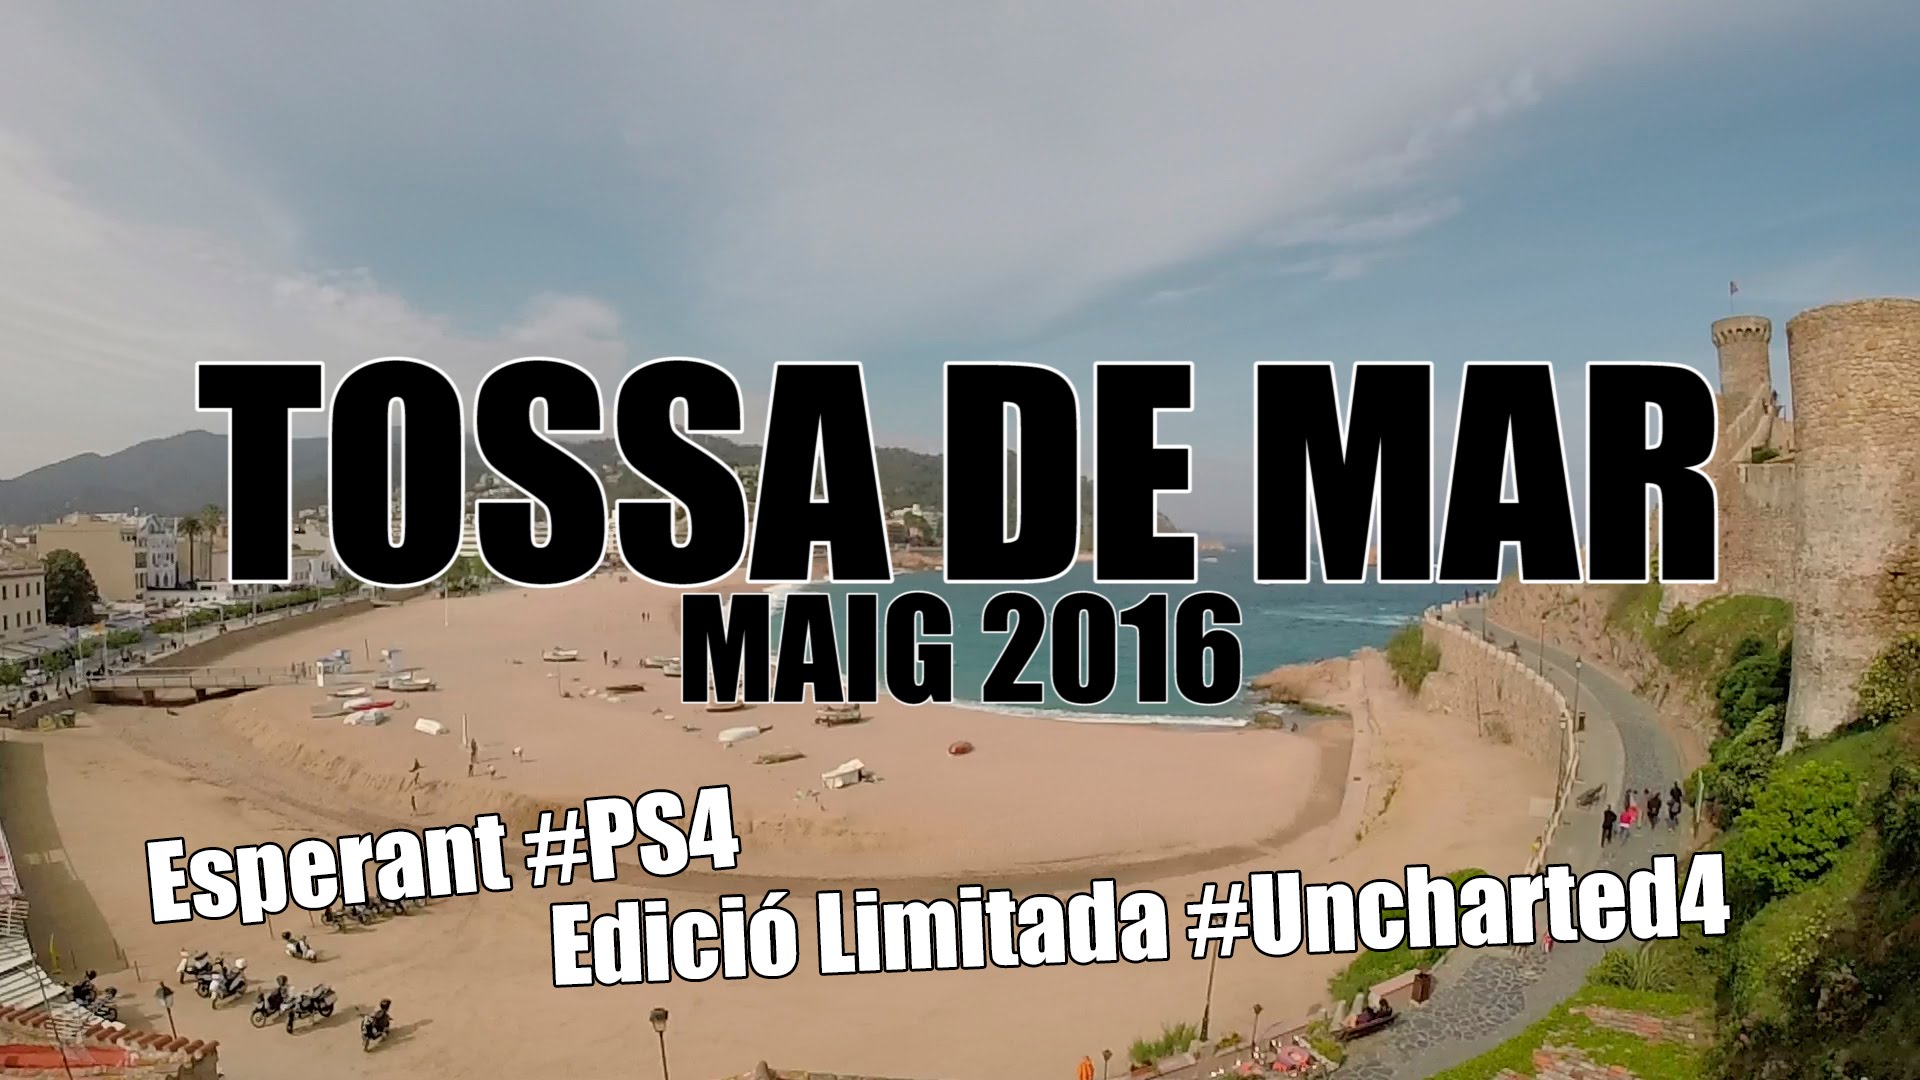 Esperant PS4 Edició Limitada Uncharted 4 a Tossa de Mar de Dev Id